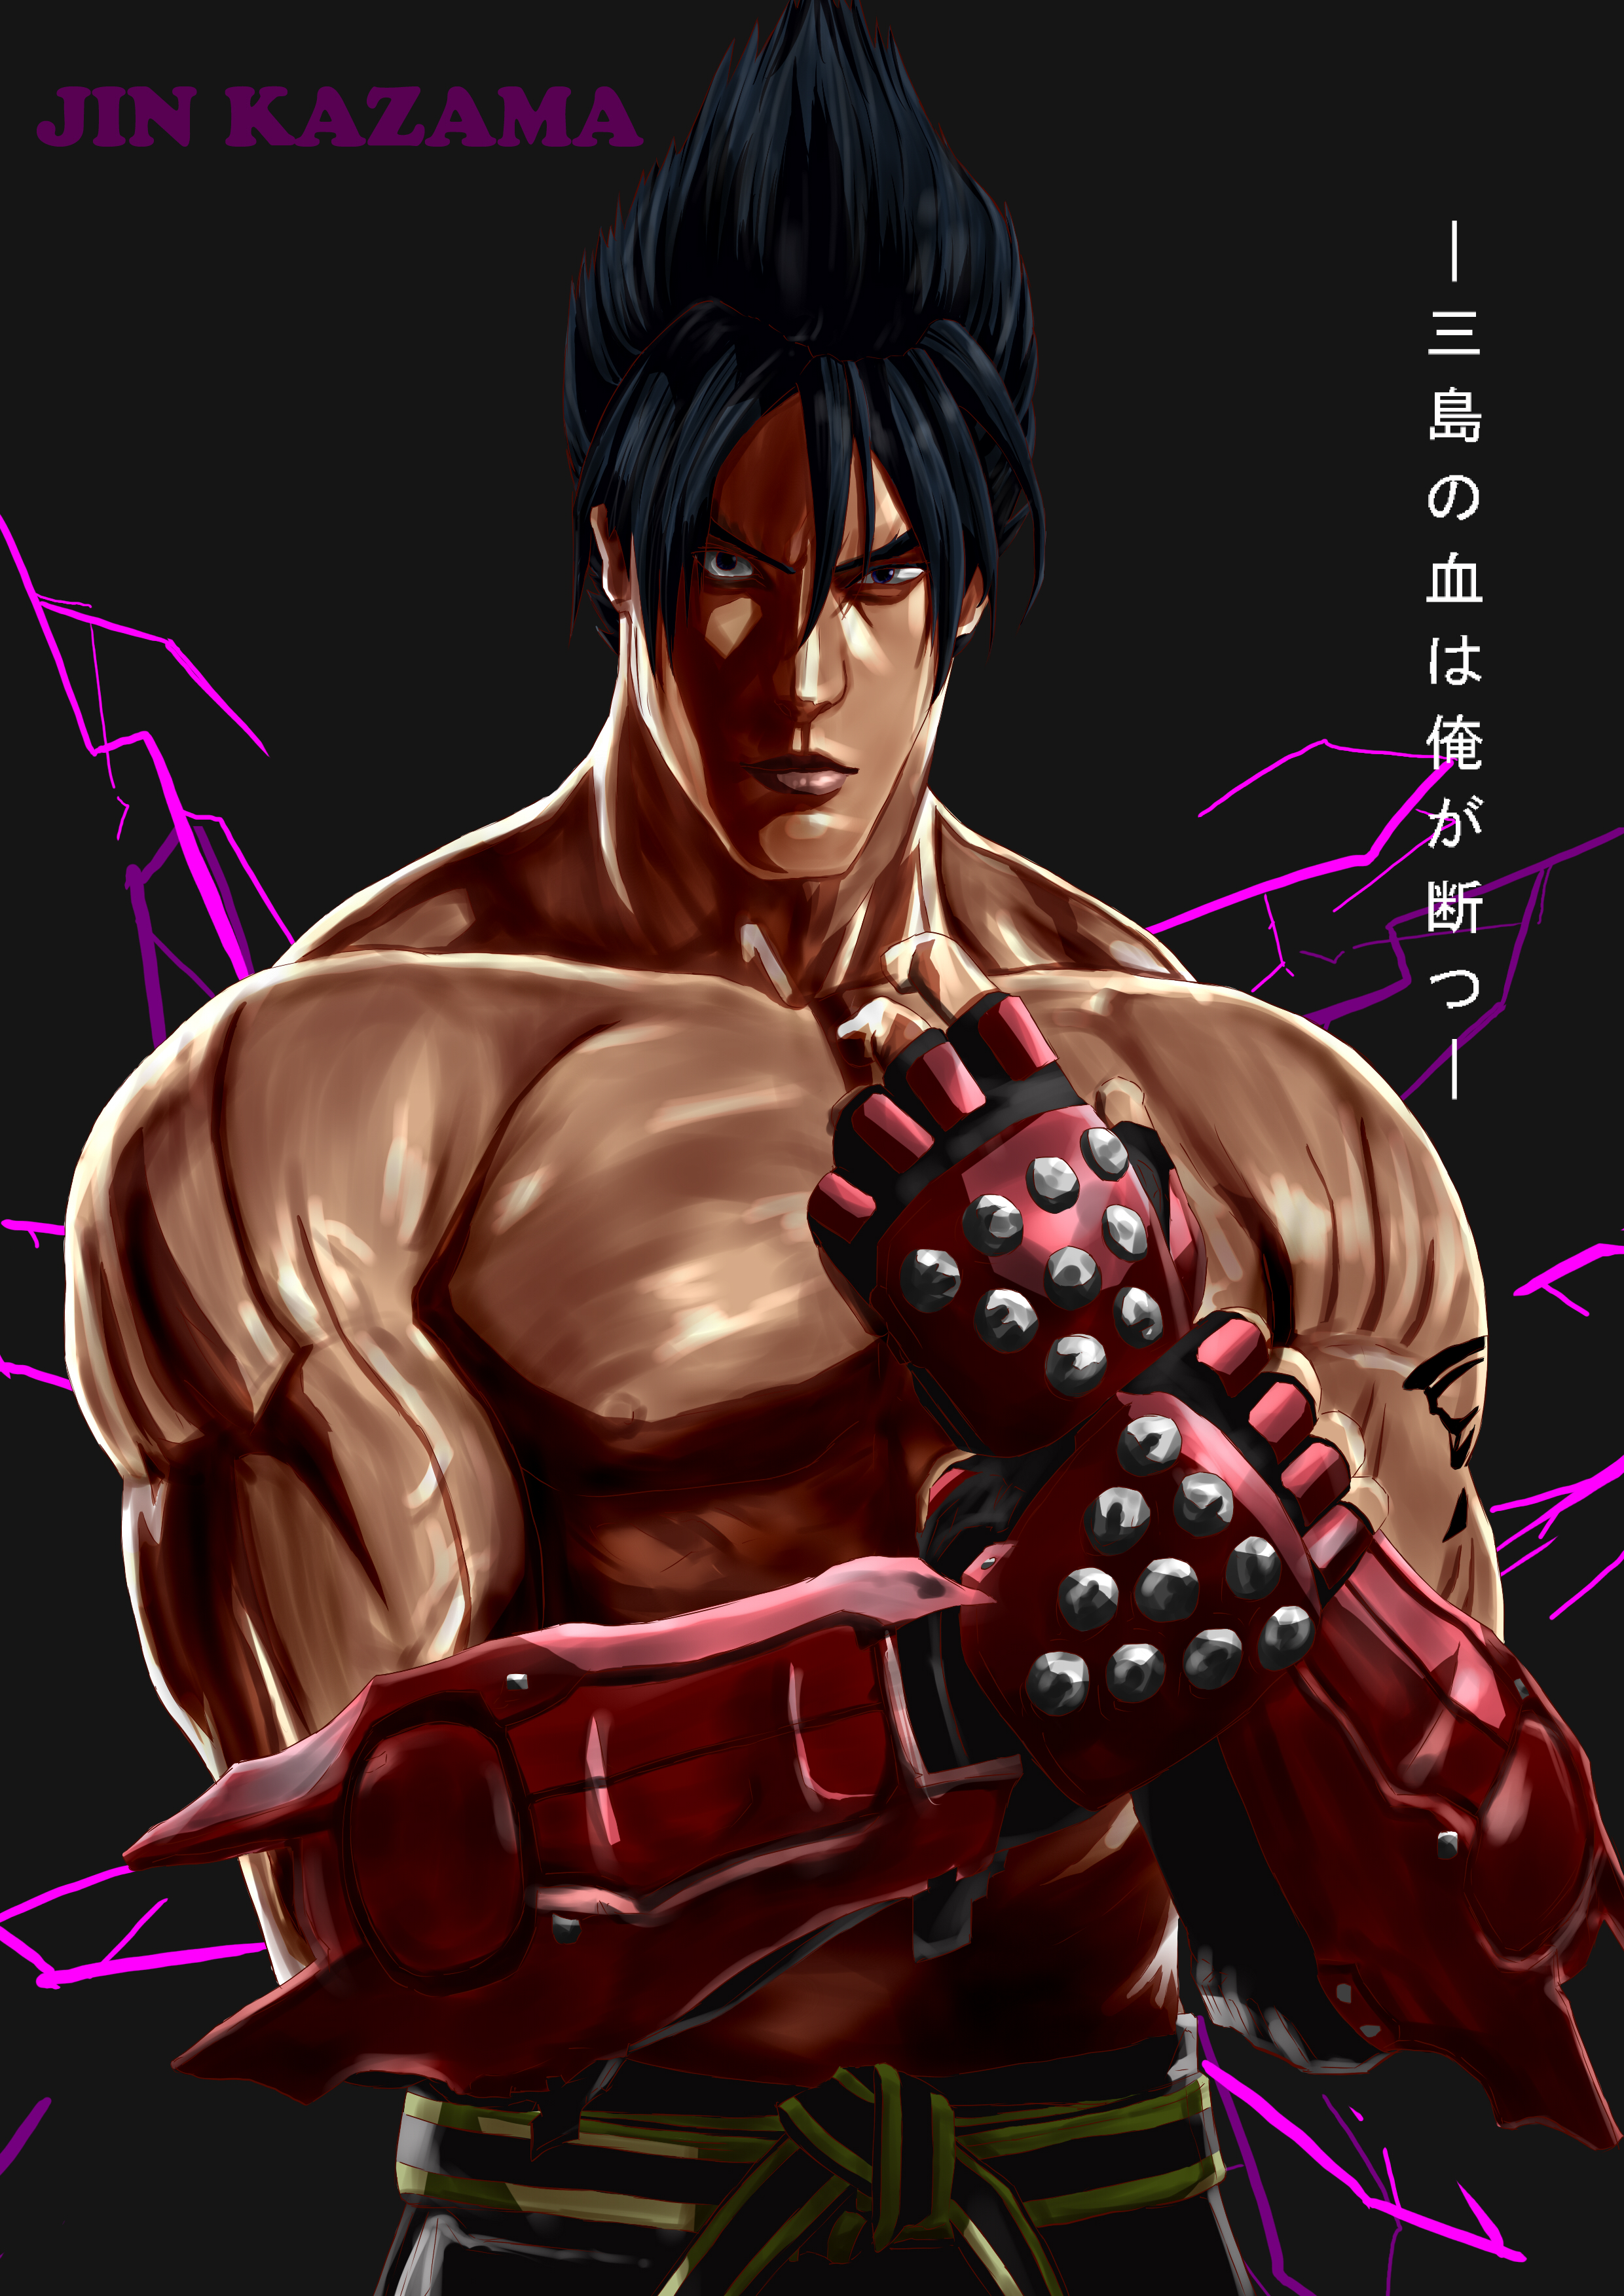 Anime Anime Games Video Game Characters Anime Boys Tekken Tekken 6 Tekken 7 Jin Kazama Short Hair Bl 2480x3507